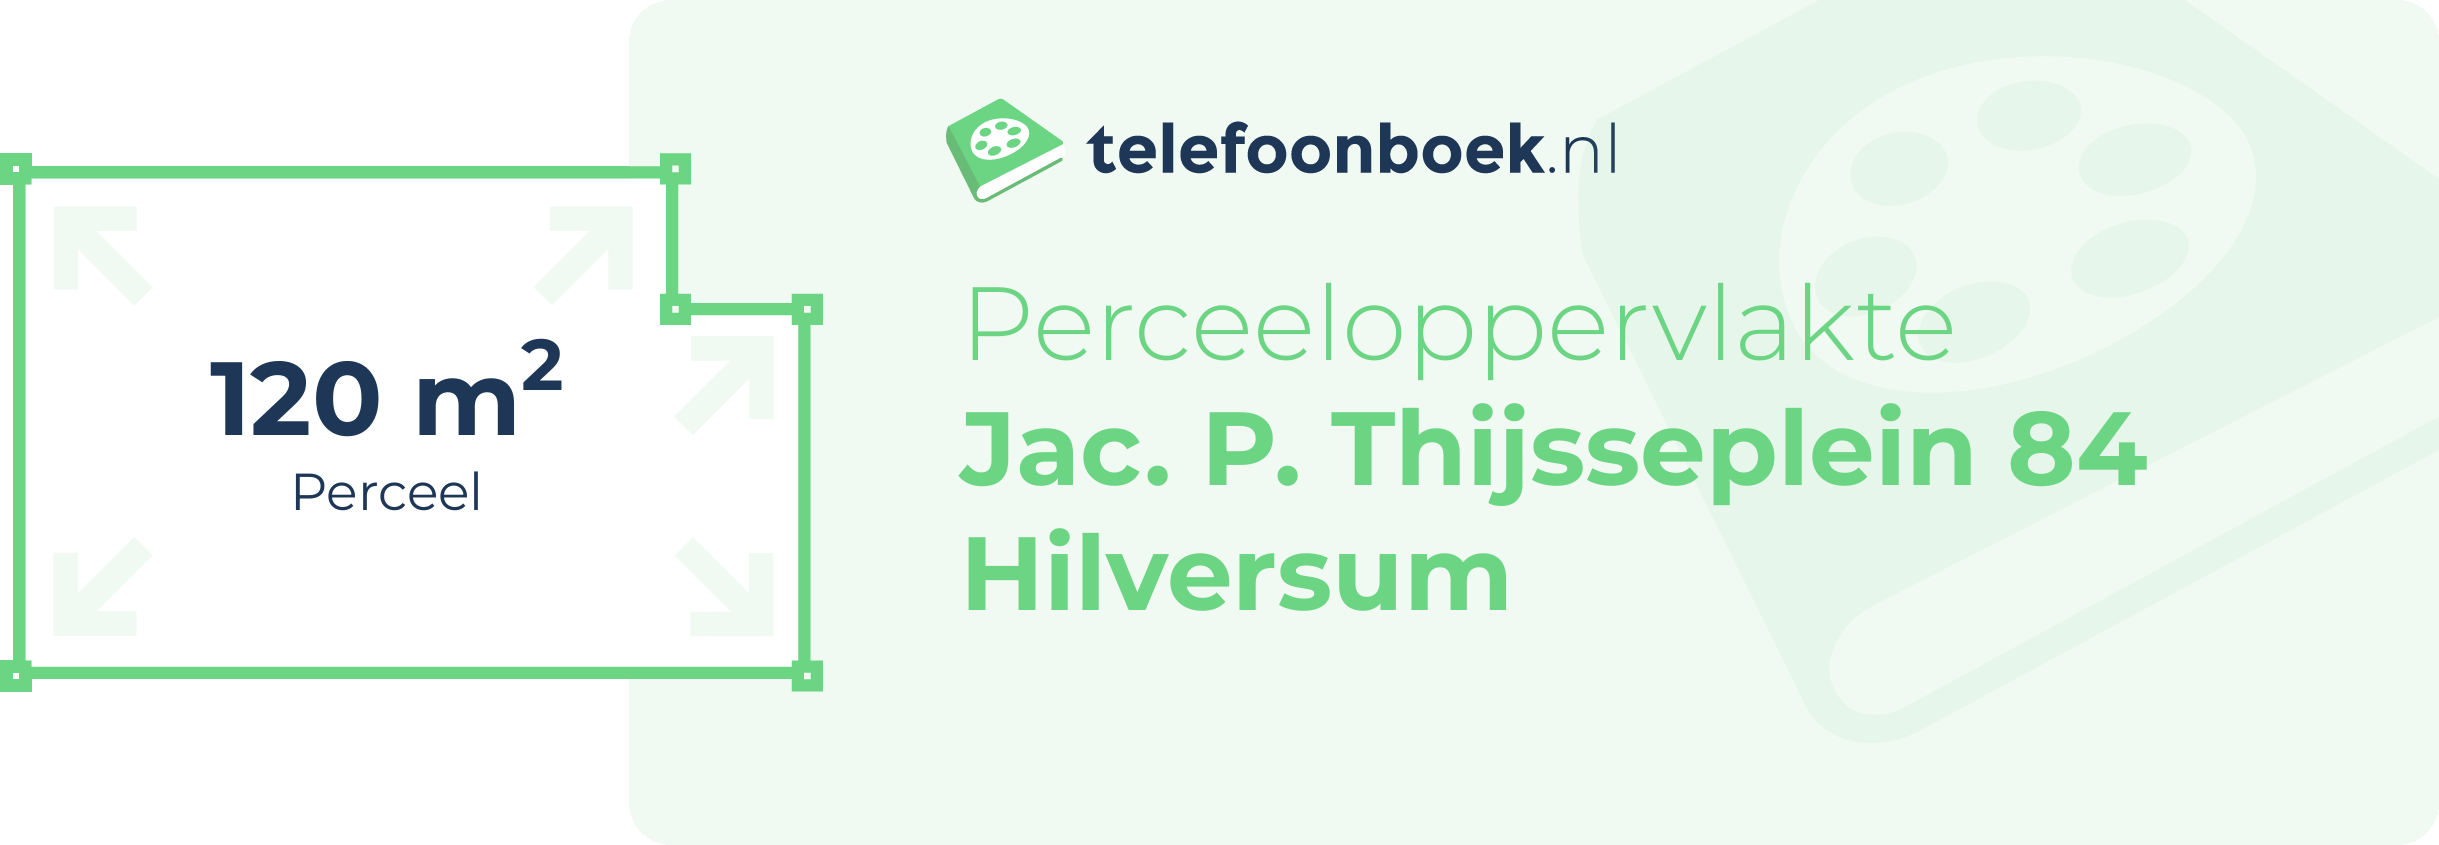 Perceeloppervlakte Jac. P. Thijsseplein 84 Hilversum